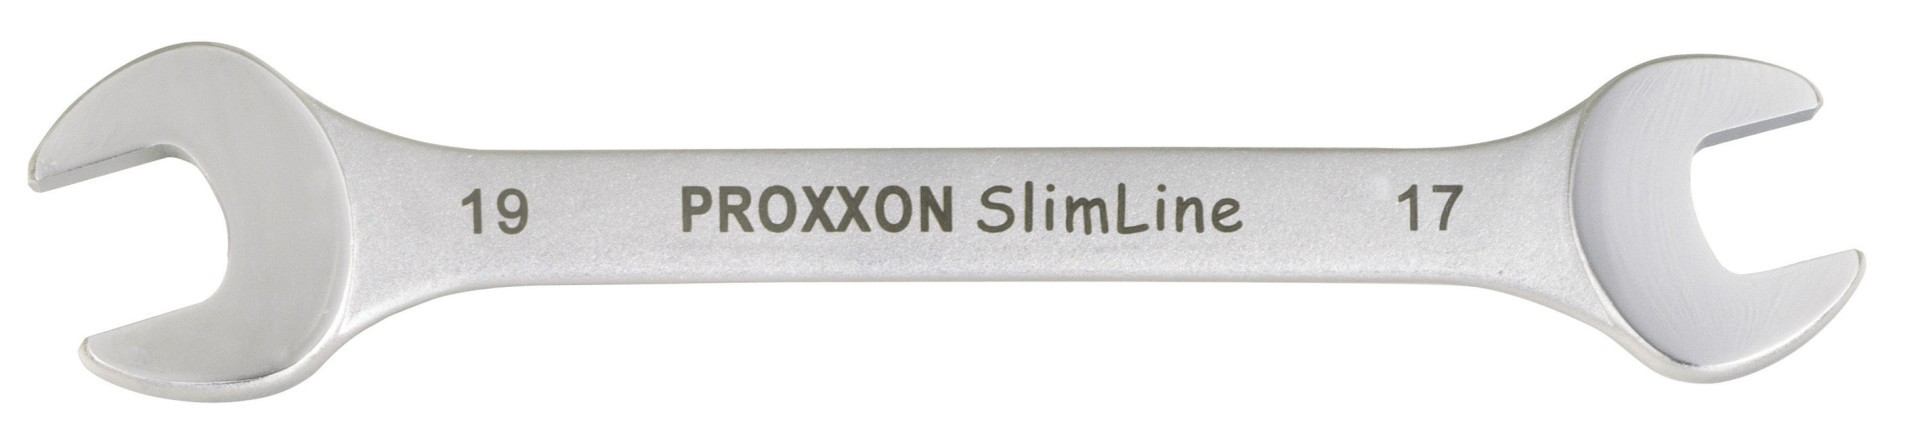 PROXXON Doppel-Gabelschlüssel